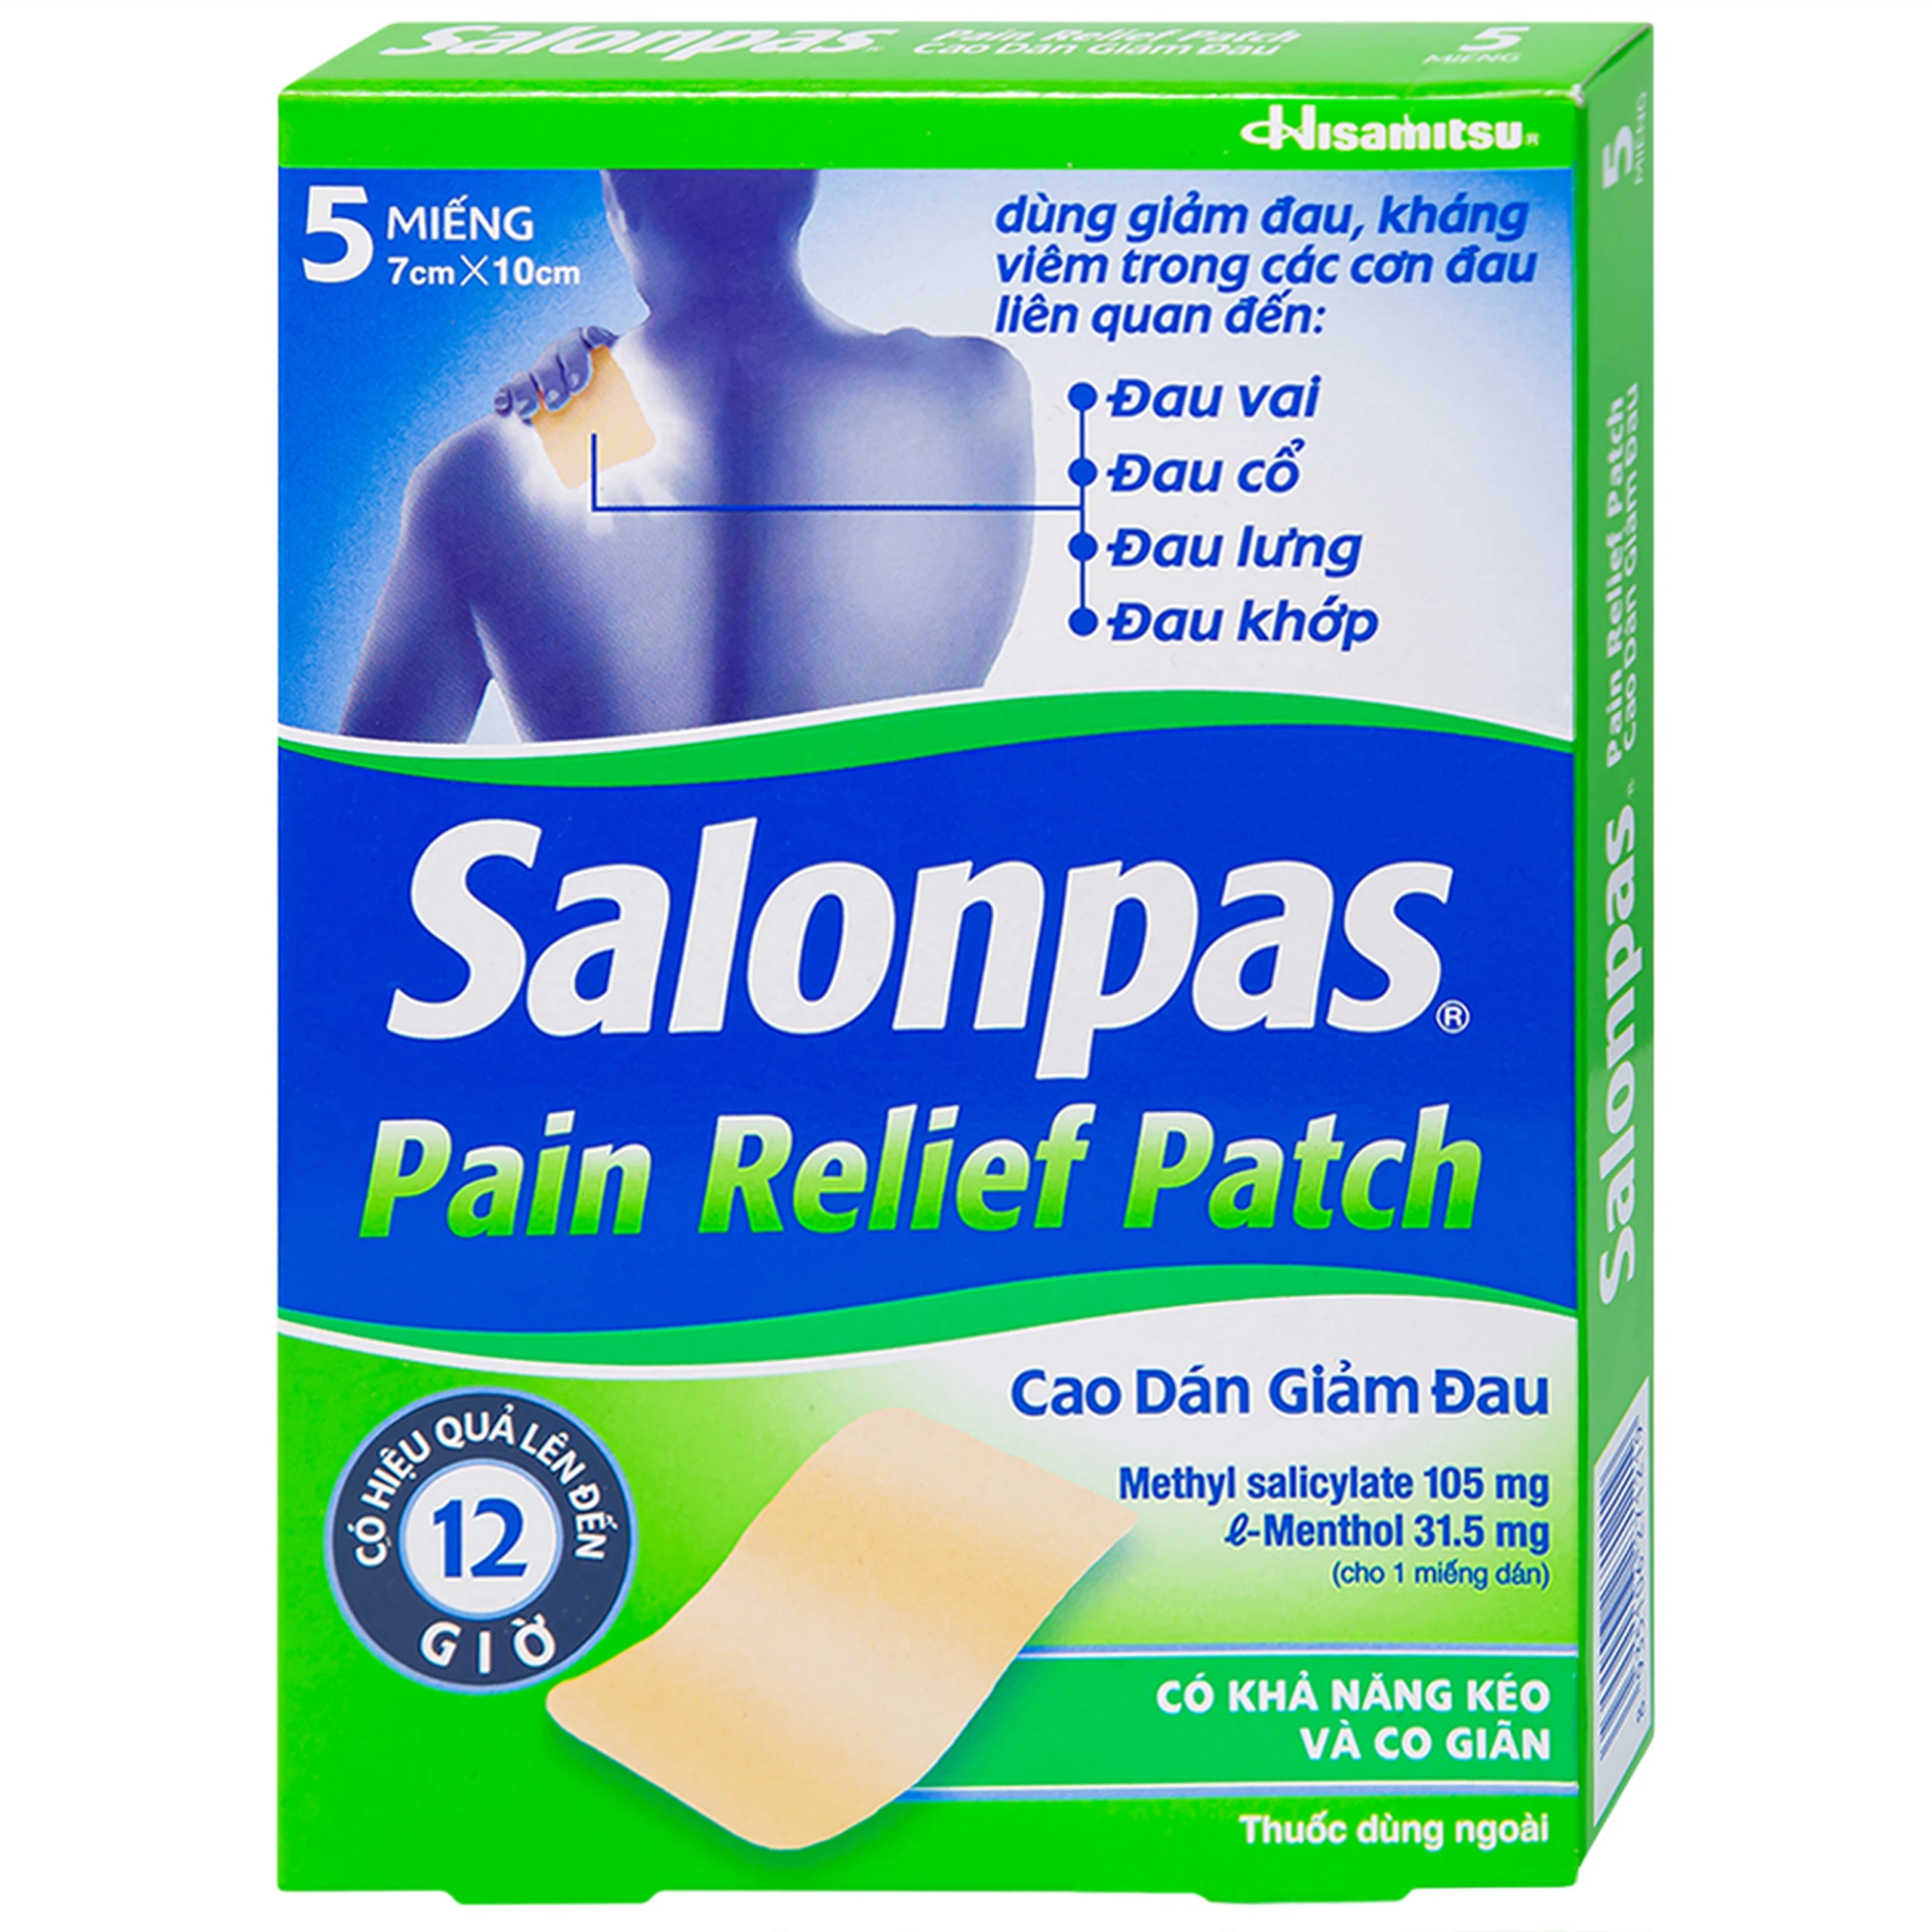 Cao dán giảm đau Salonpas Pain Relief Patch dùng trong các cơn đau vai, đau cổ (7cm x 10 cm - 5 miếng)